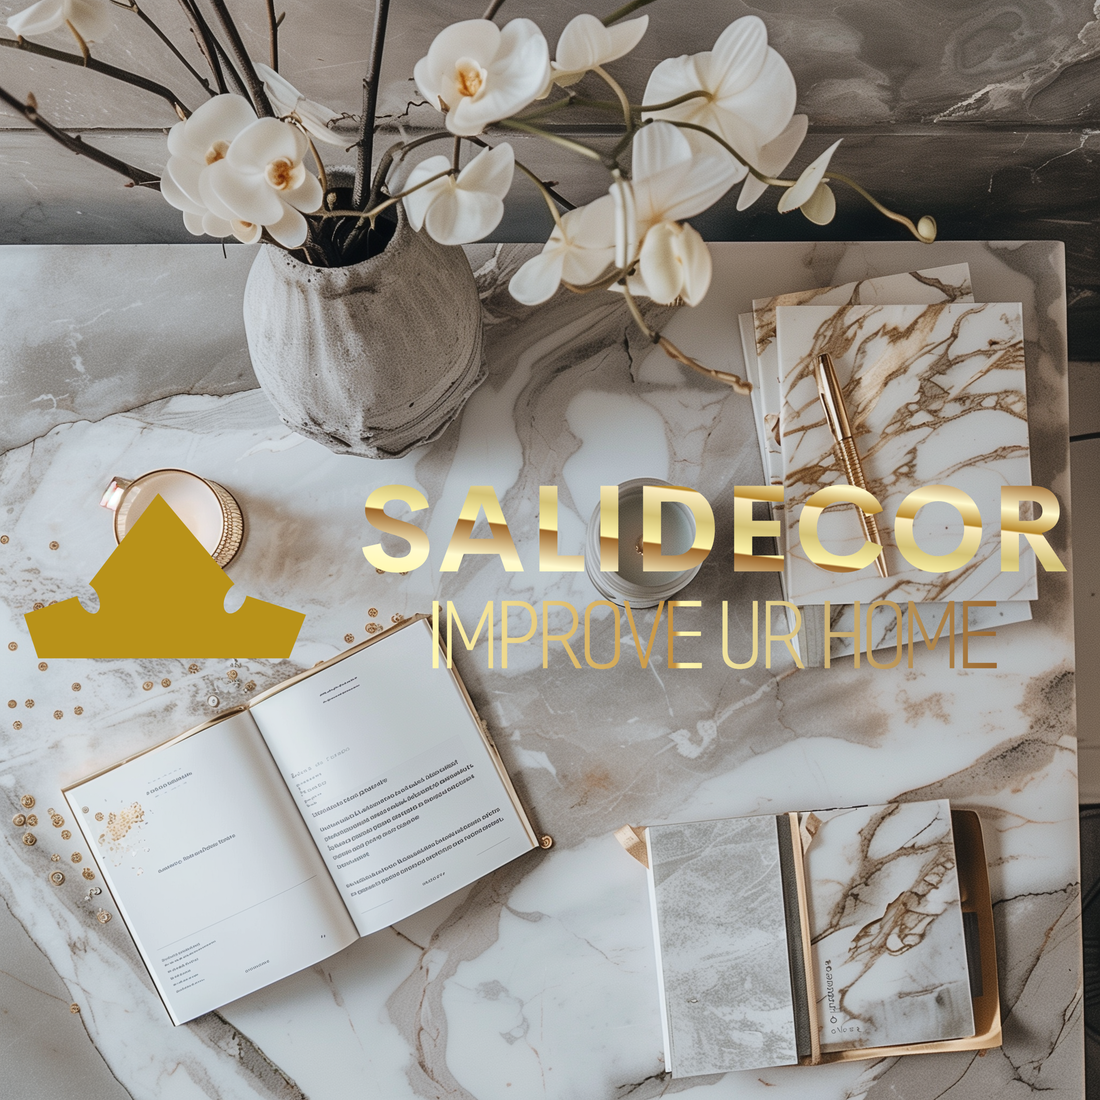 Willkommen bei saliDecor: Eine Ode an Kunst und Handwerkskunst